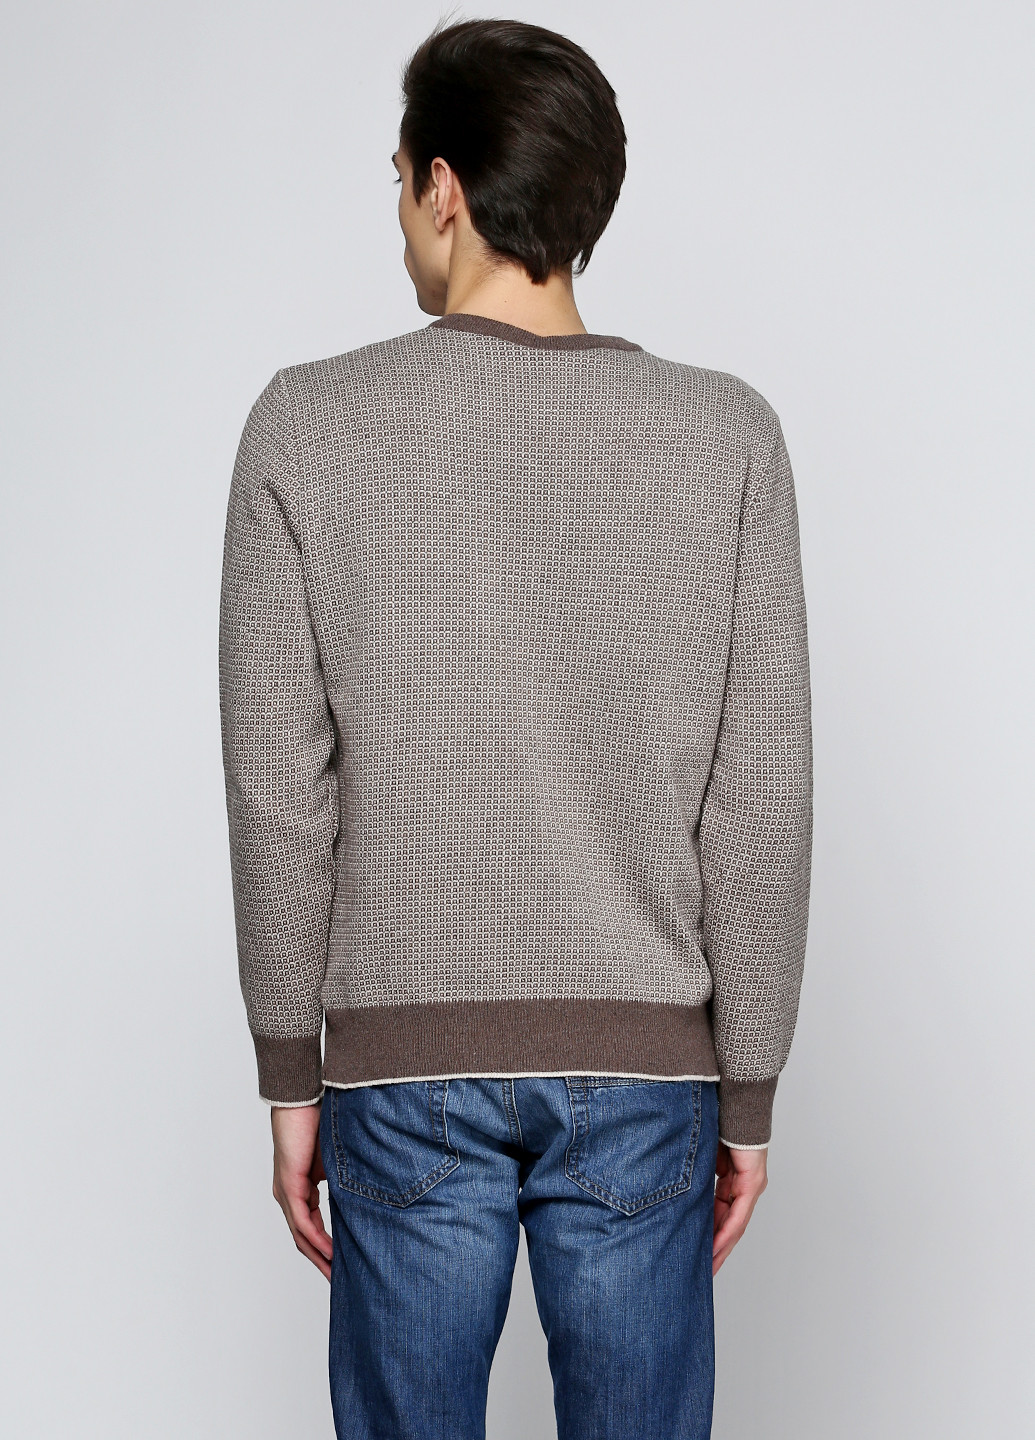 Бежевый демисезонный пуловер пуловер Van Cliff